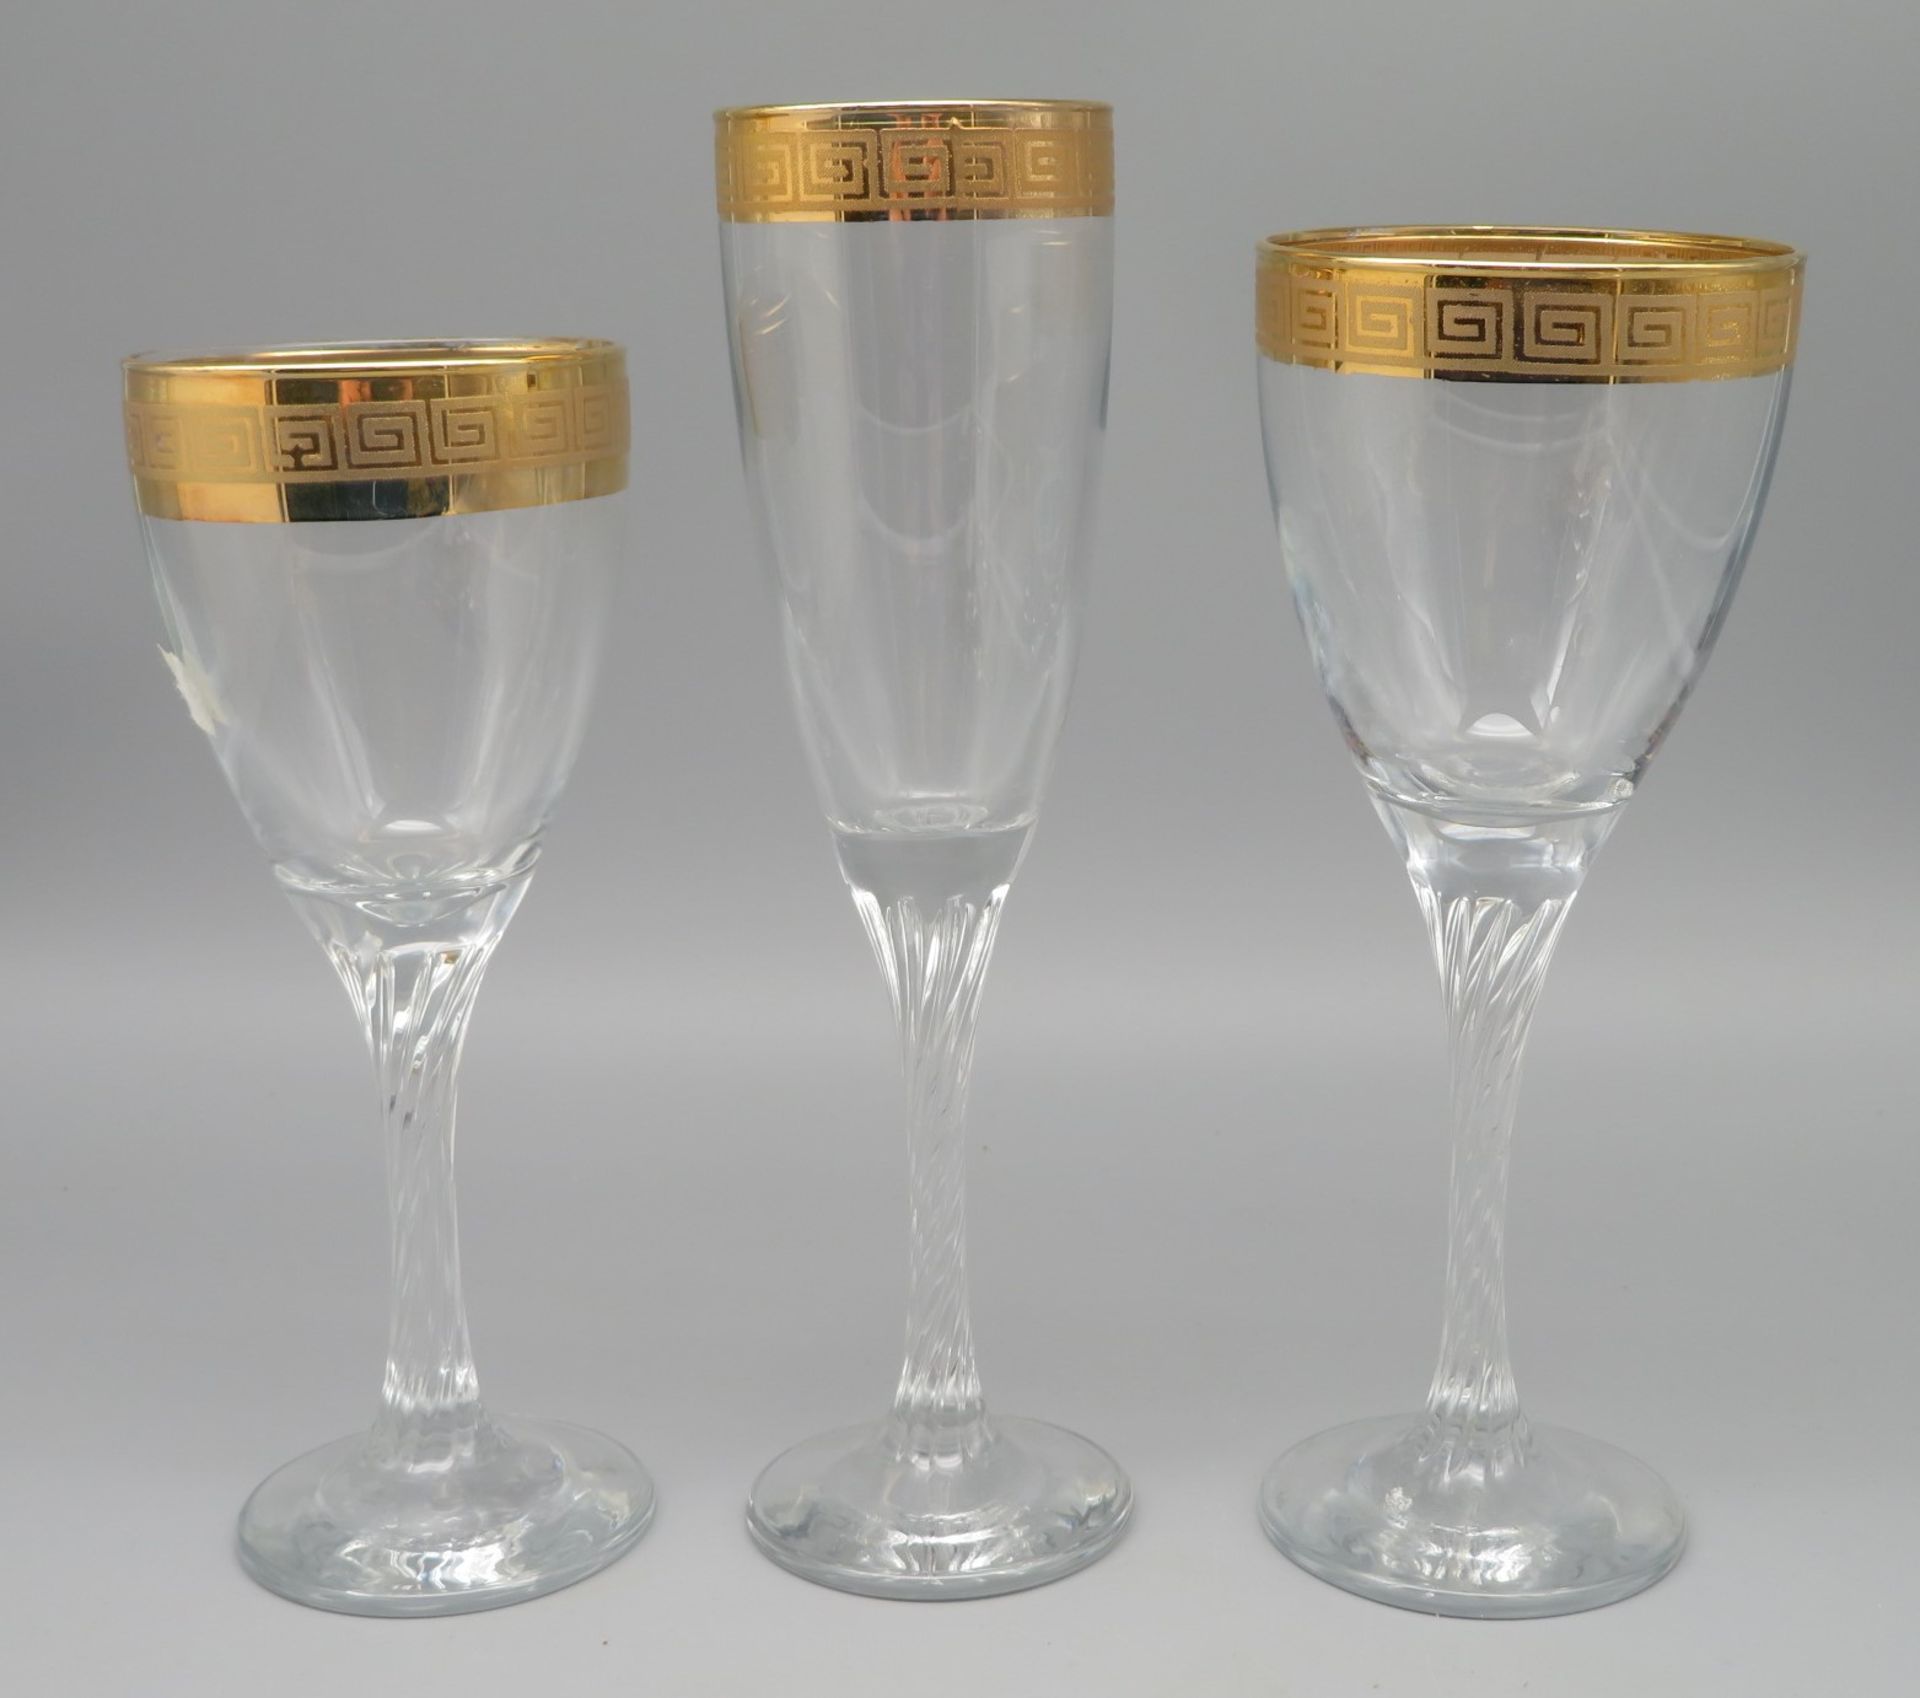 17 teiliges Glasset, bestehend aus 6 Sekt-, 5 Rot- und 6 Südweingläsern, farbloses Glas mit gedreht